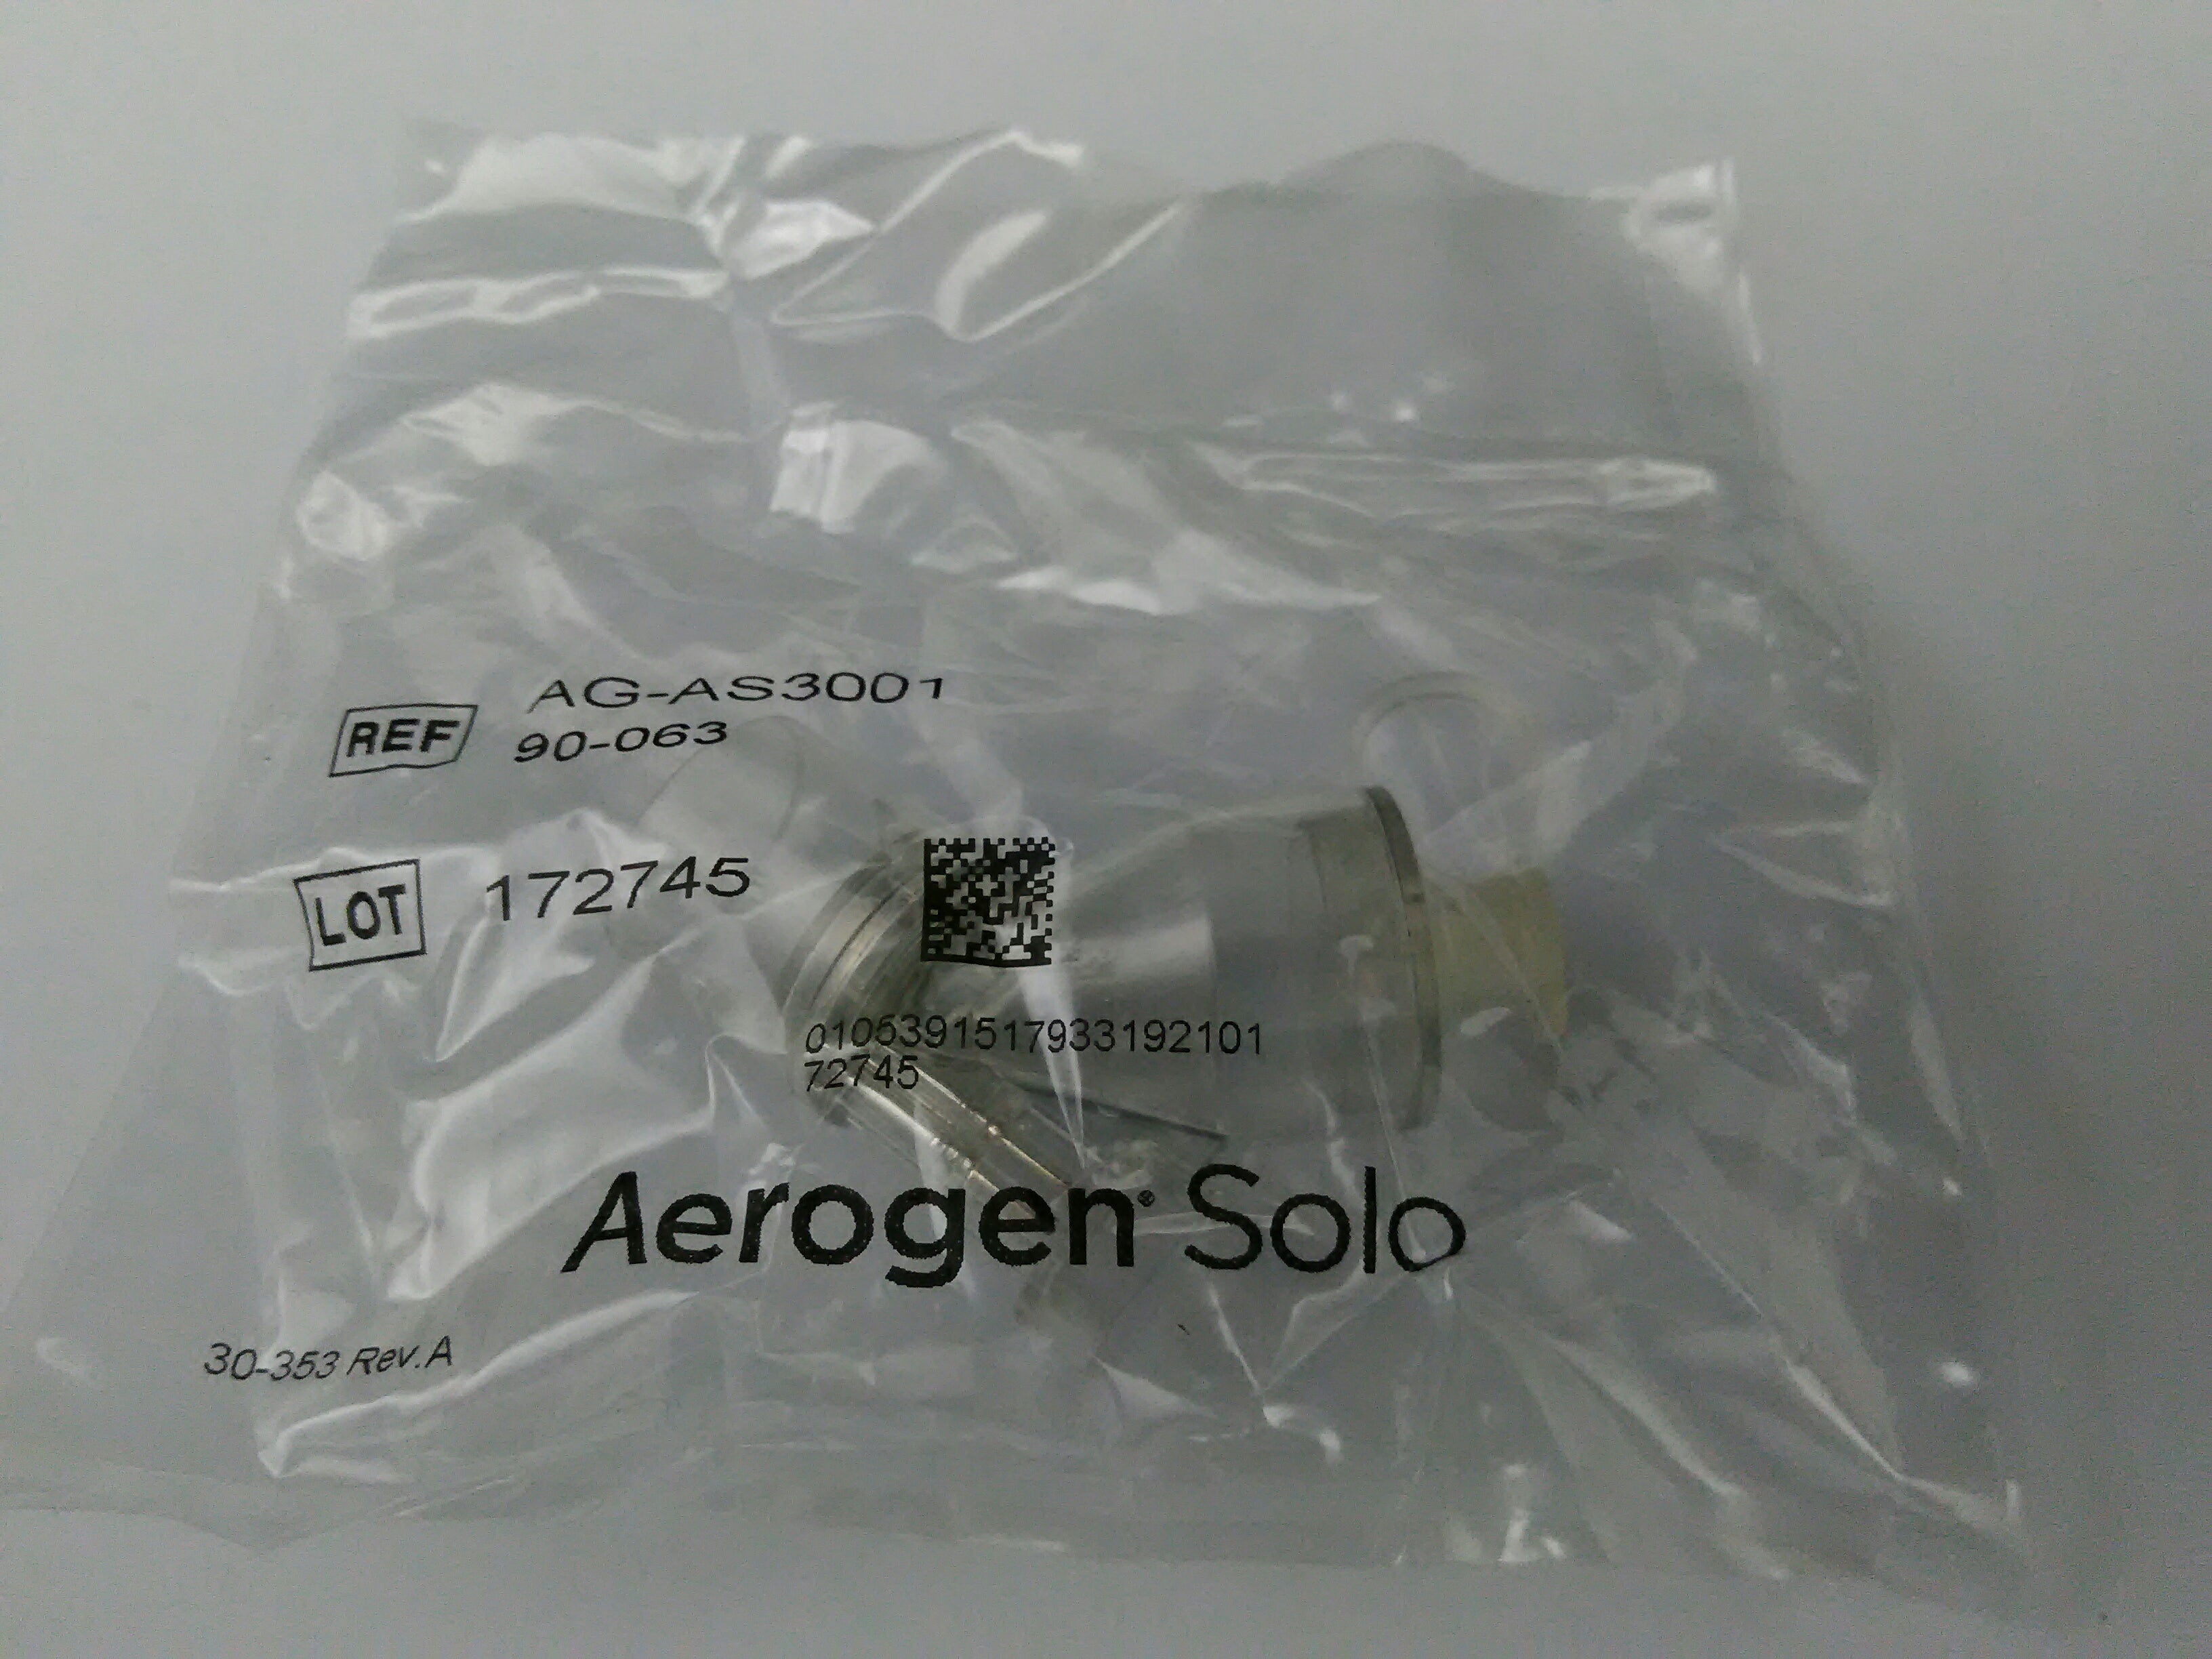 TRI-ANIM 06-AG-AS3200 NEBULIZER AERONEB SOLO